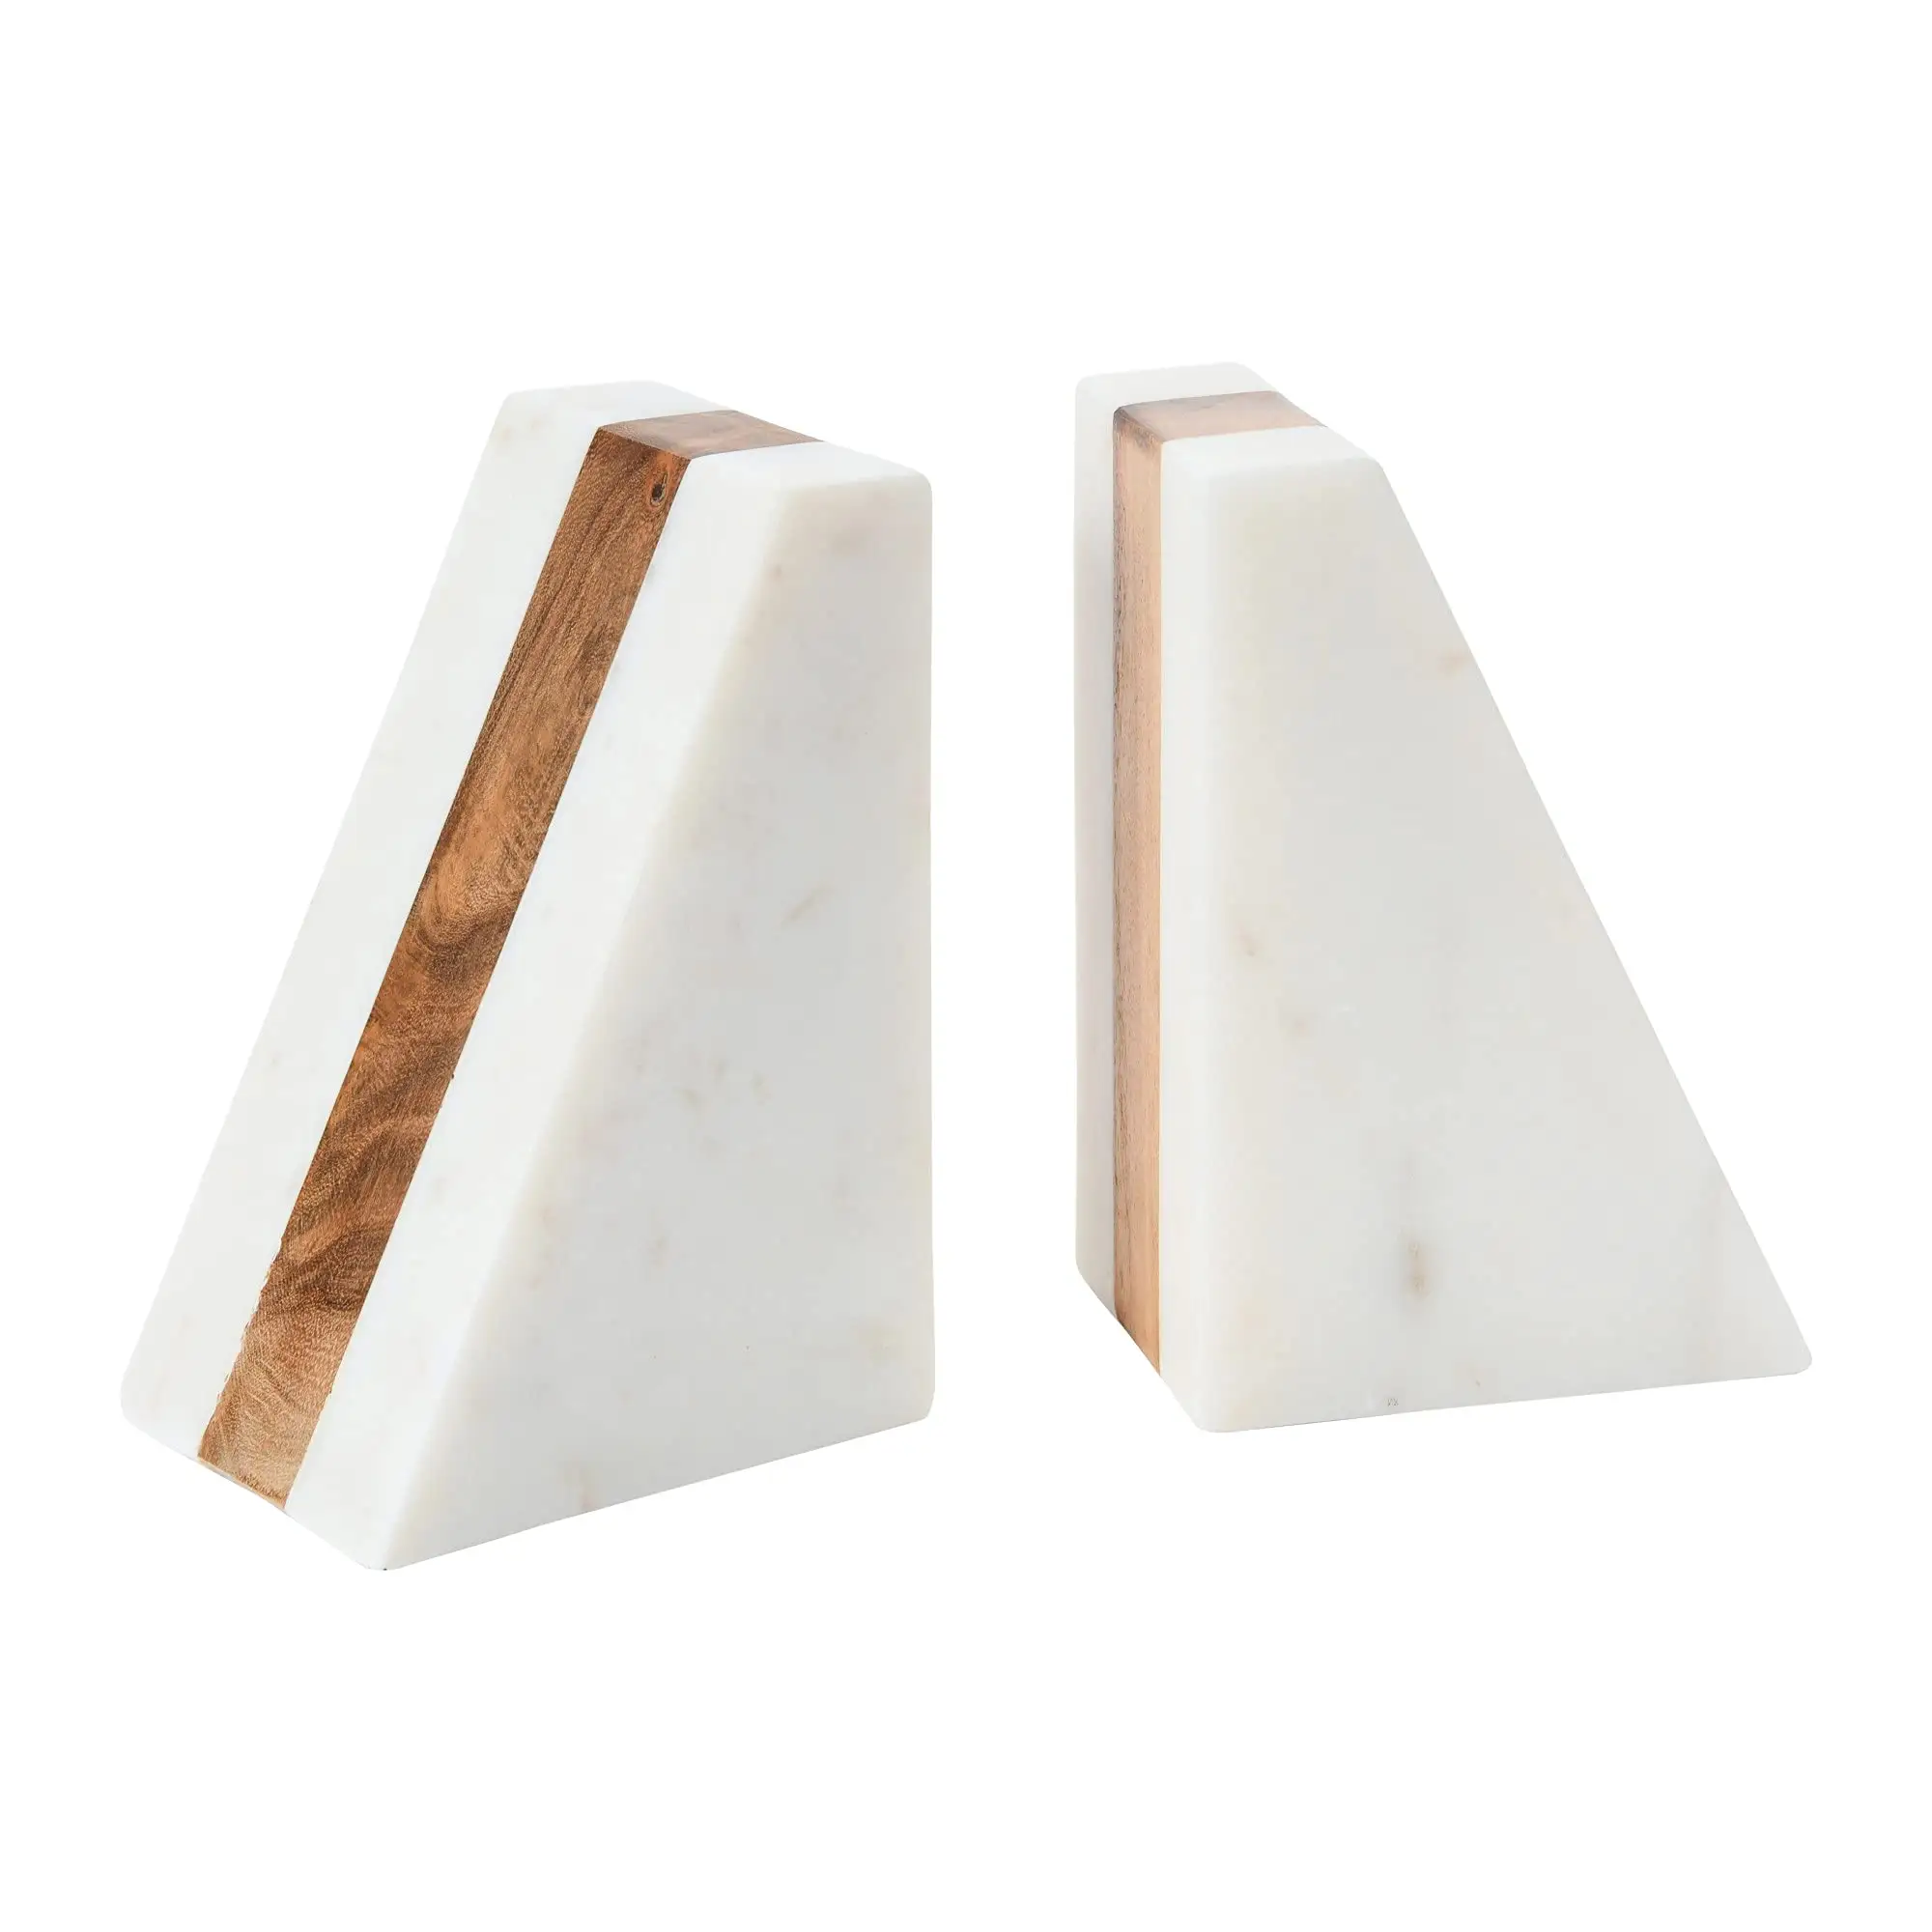 Marmor geometrische Buchenden mit Holz-Einsatz weiß einzigartiges dreieckiges Design Tisch Dekor Büroprodukte Schreibtisch-Organisator